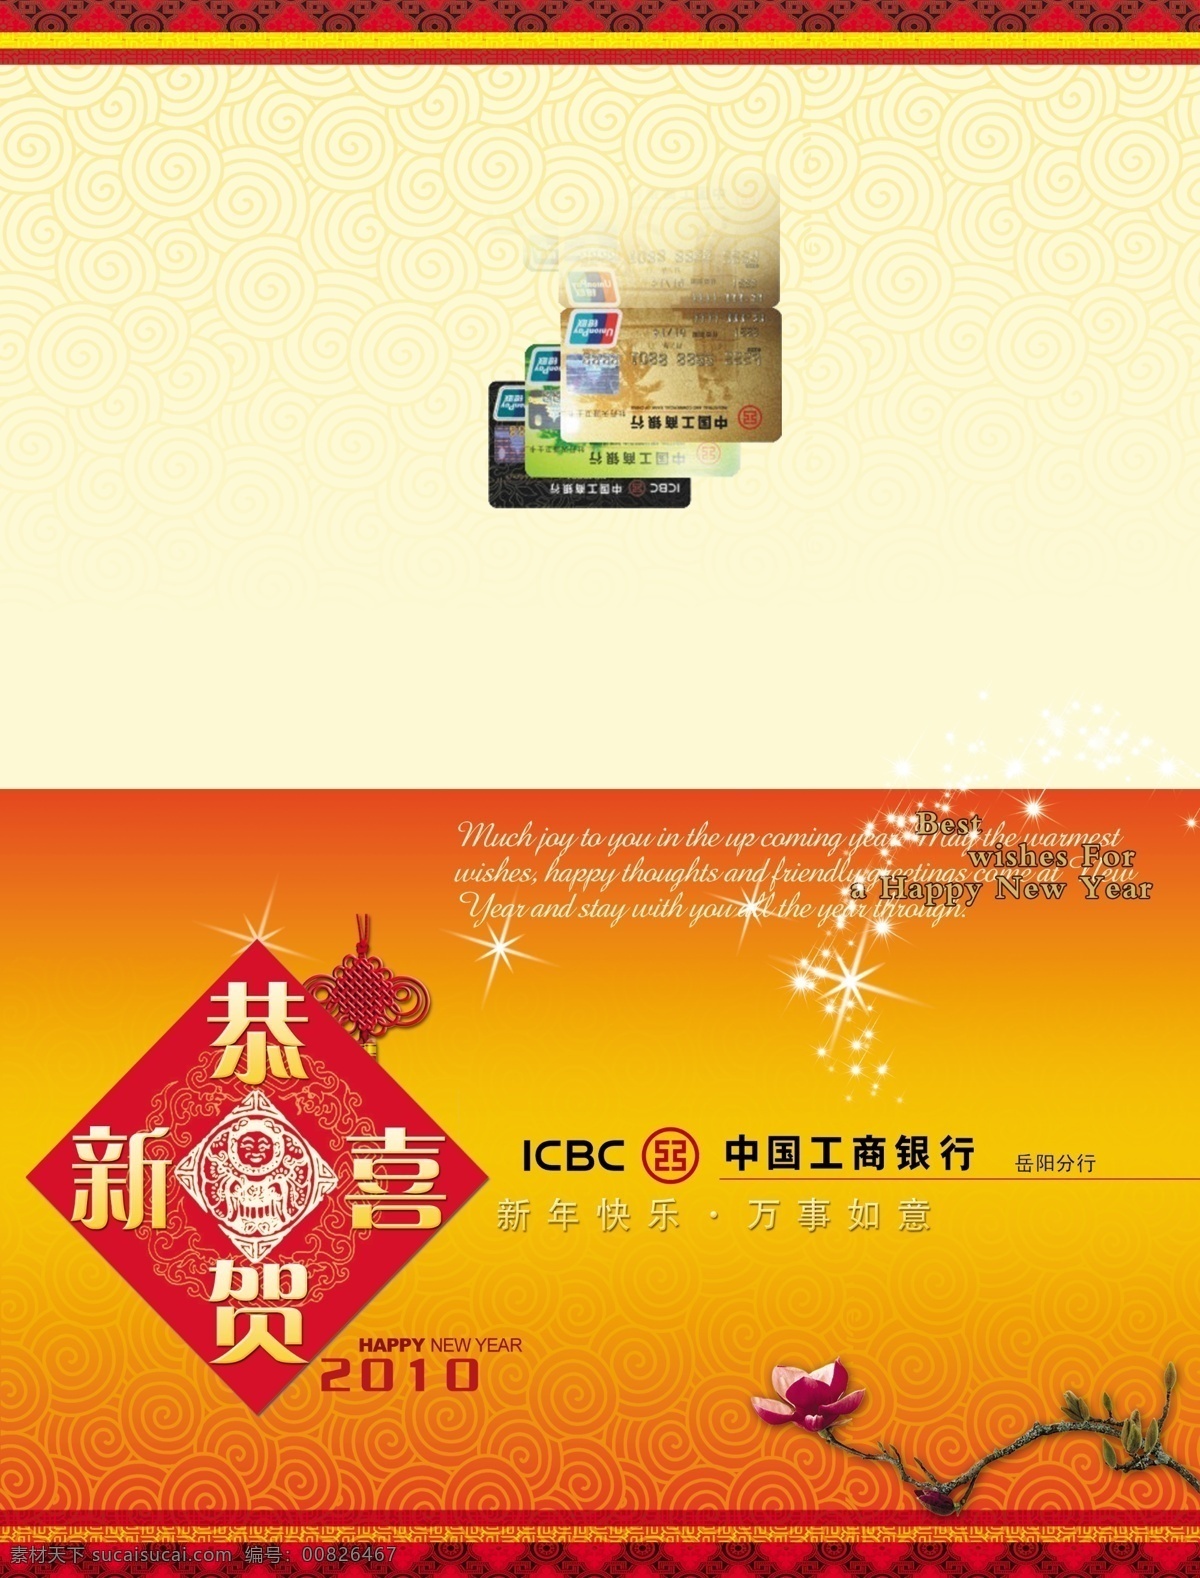 中国工商银行 贺卡 中国 工商银行 新春 2010 名片卡片 广告设计模板 源文件